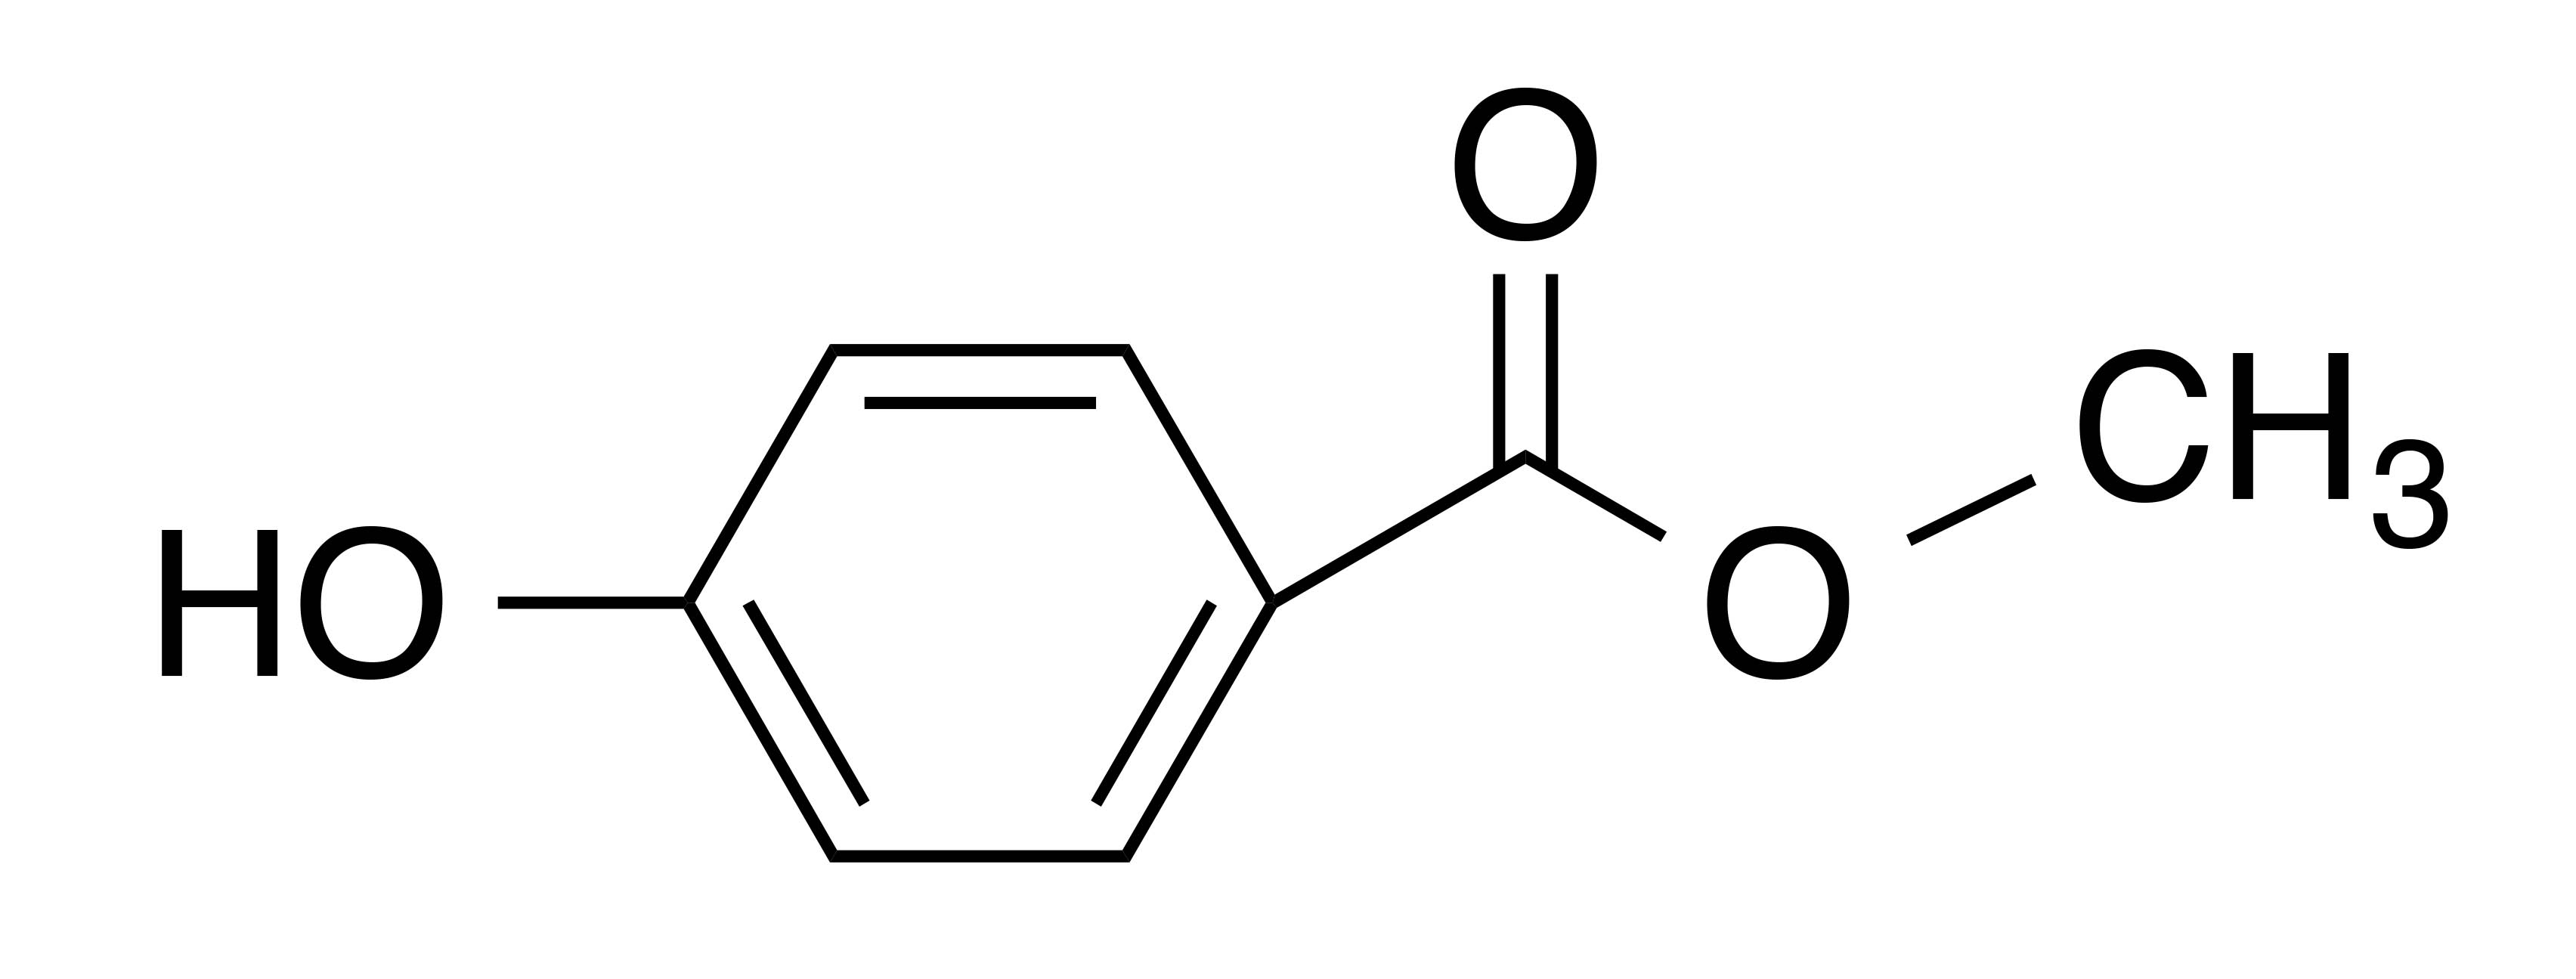 Метилпарагидроксибензоат (парабен, e-218): что это, вред применения в лекарствах, продуктах, косметике. канцерогенное влияние, воздействие на организм